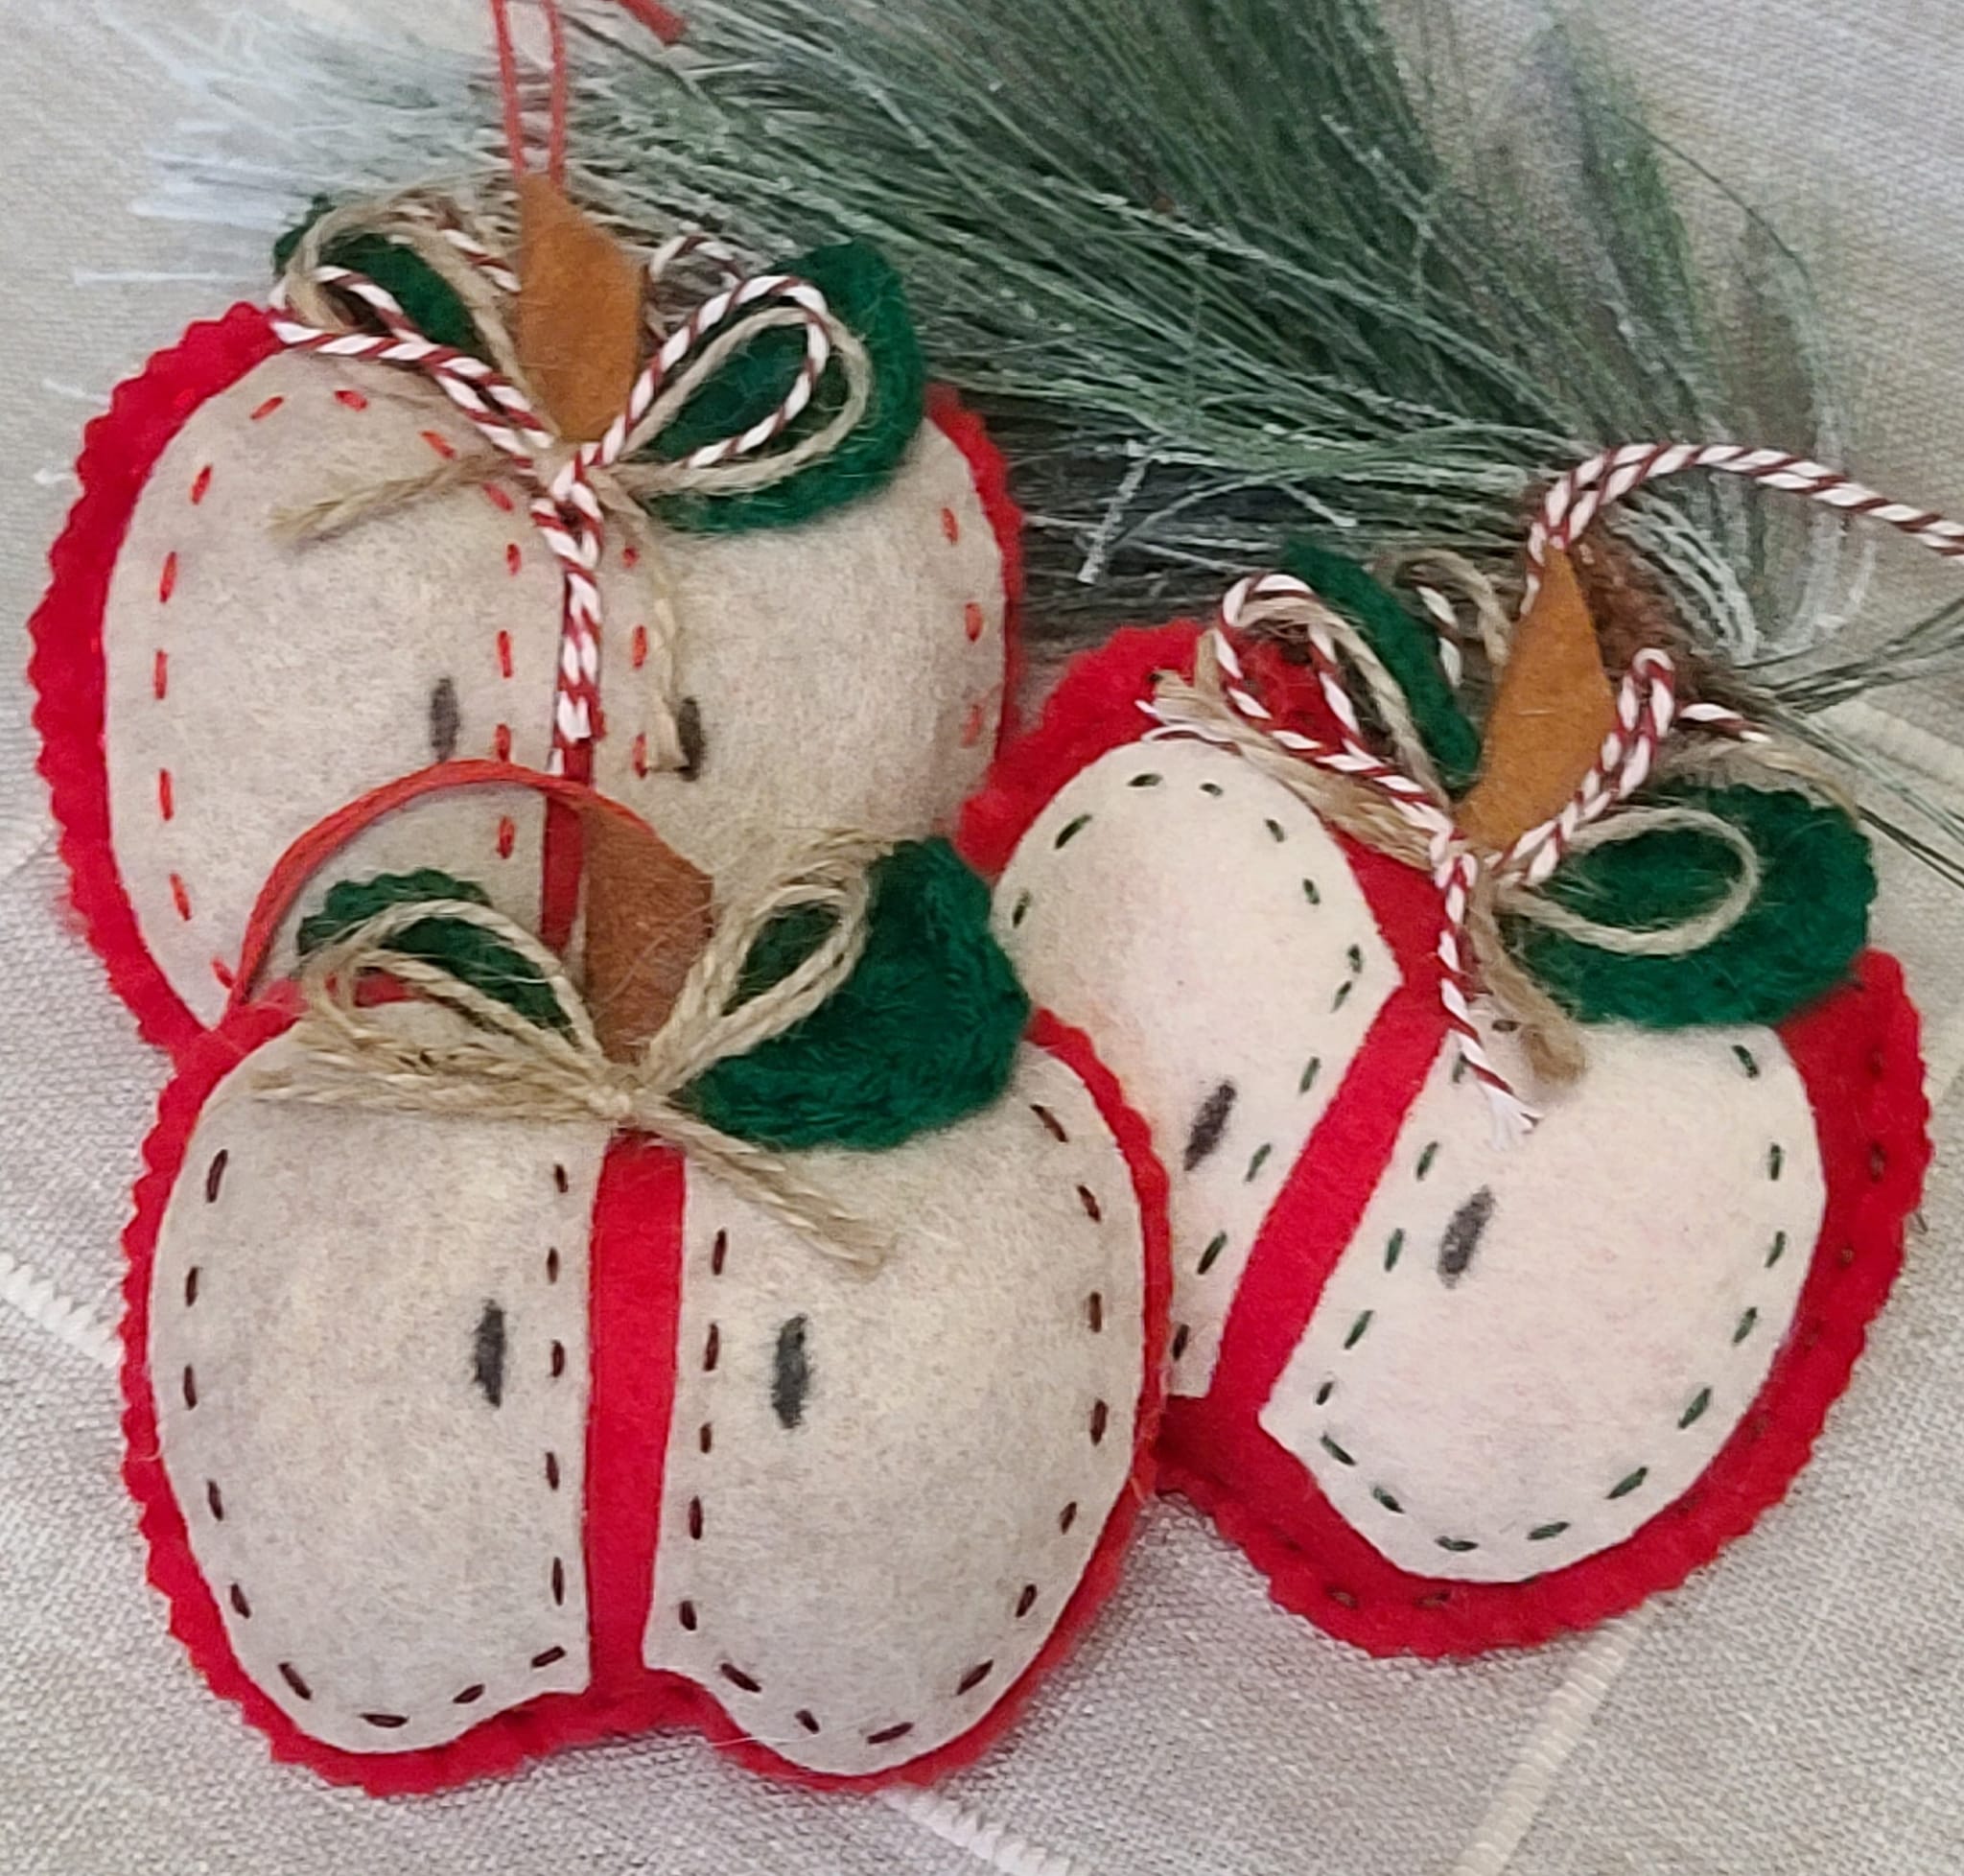 Apple felt ornament or bowl filler with crochet green leaves